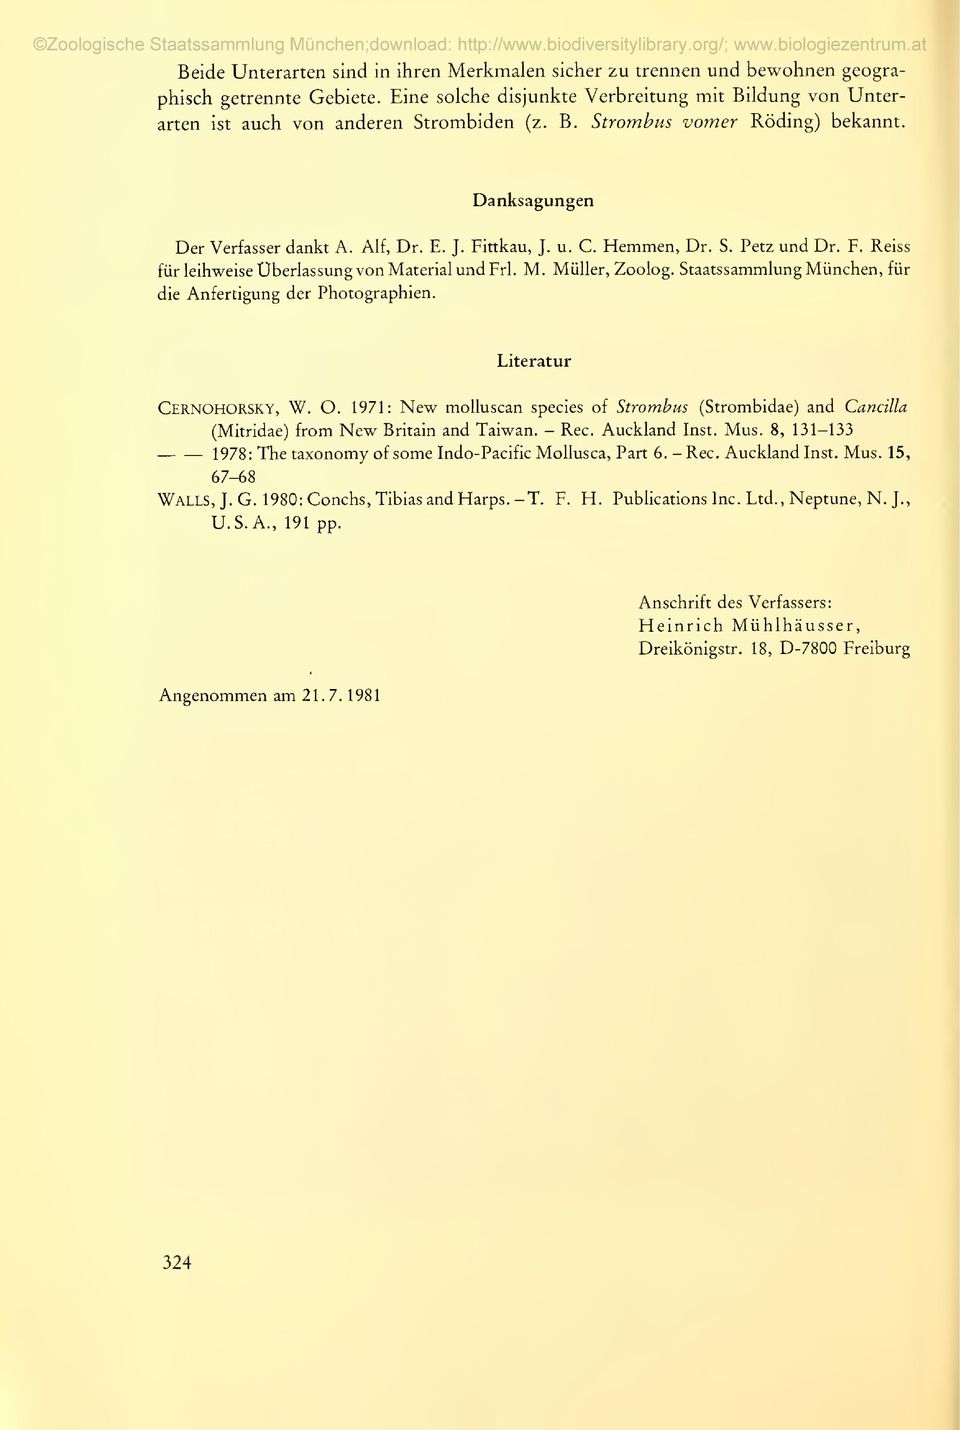 Staatssammlung München, für die Anfertigung der Photographien. Literatur CernoHORSKY, W. O. 1971: New molluscan species of Strombus (Strombidae) and Cancüla (Mitridae) from New Britain and Taiwan.